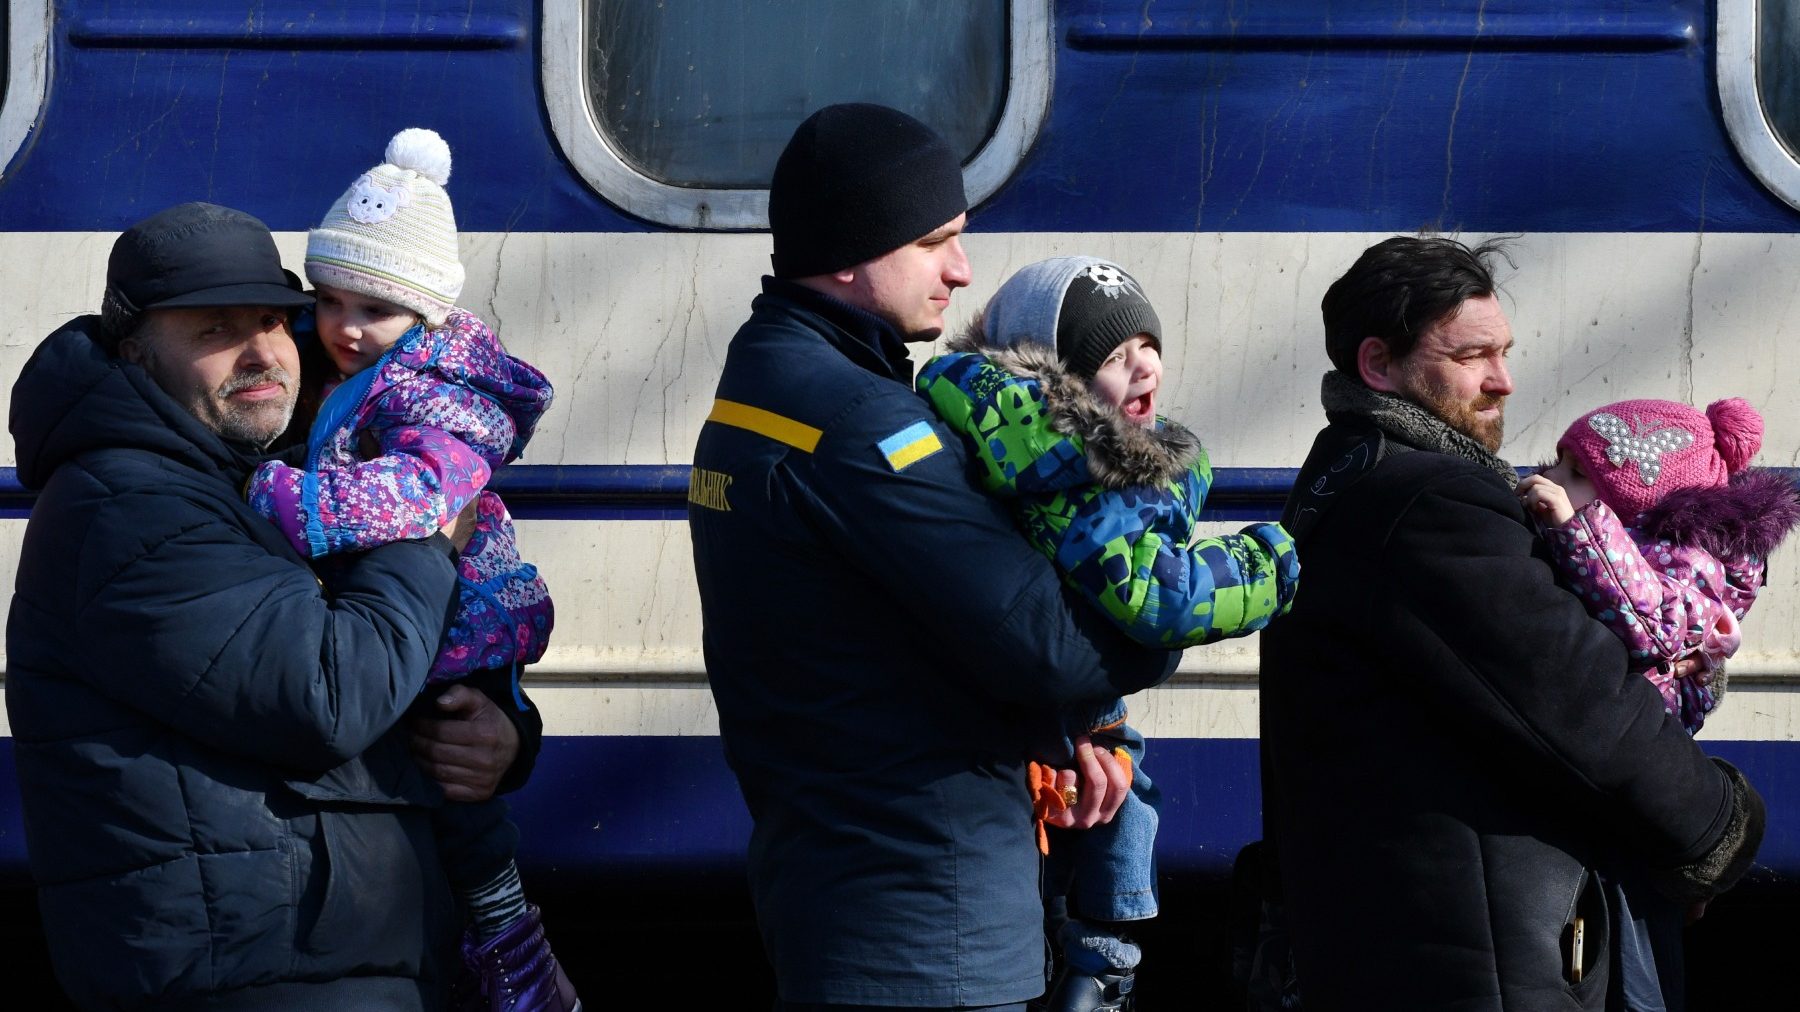 Refugiados ucranianos en la estación de Kramatorsk, al sureste de Kiev (ANDRIY ANDRIYENKO / ZUMA PRESS).